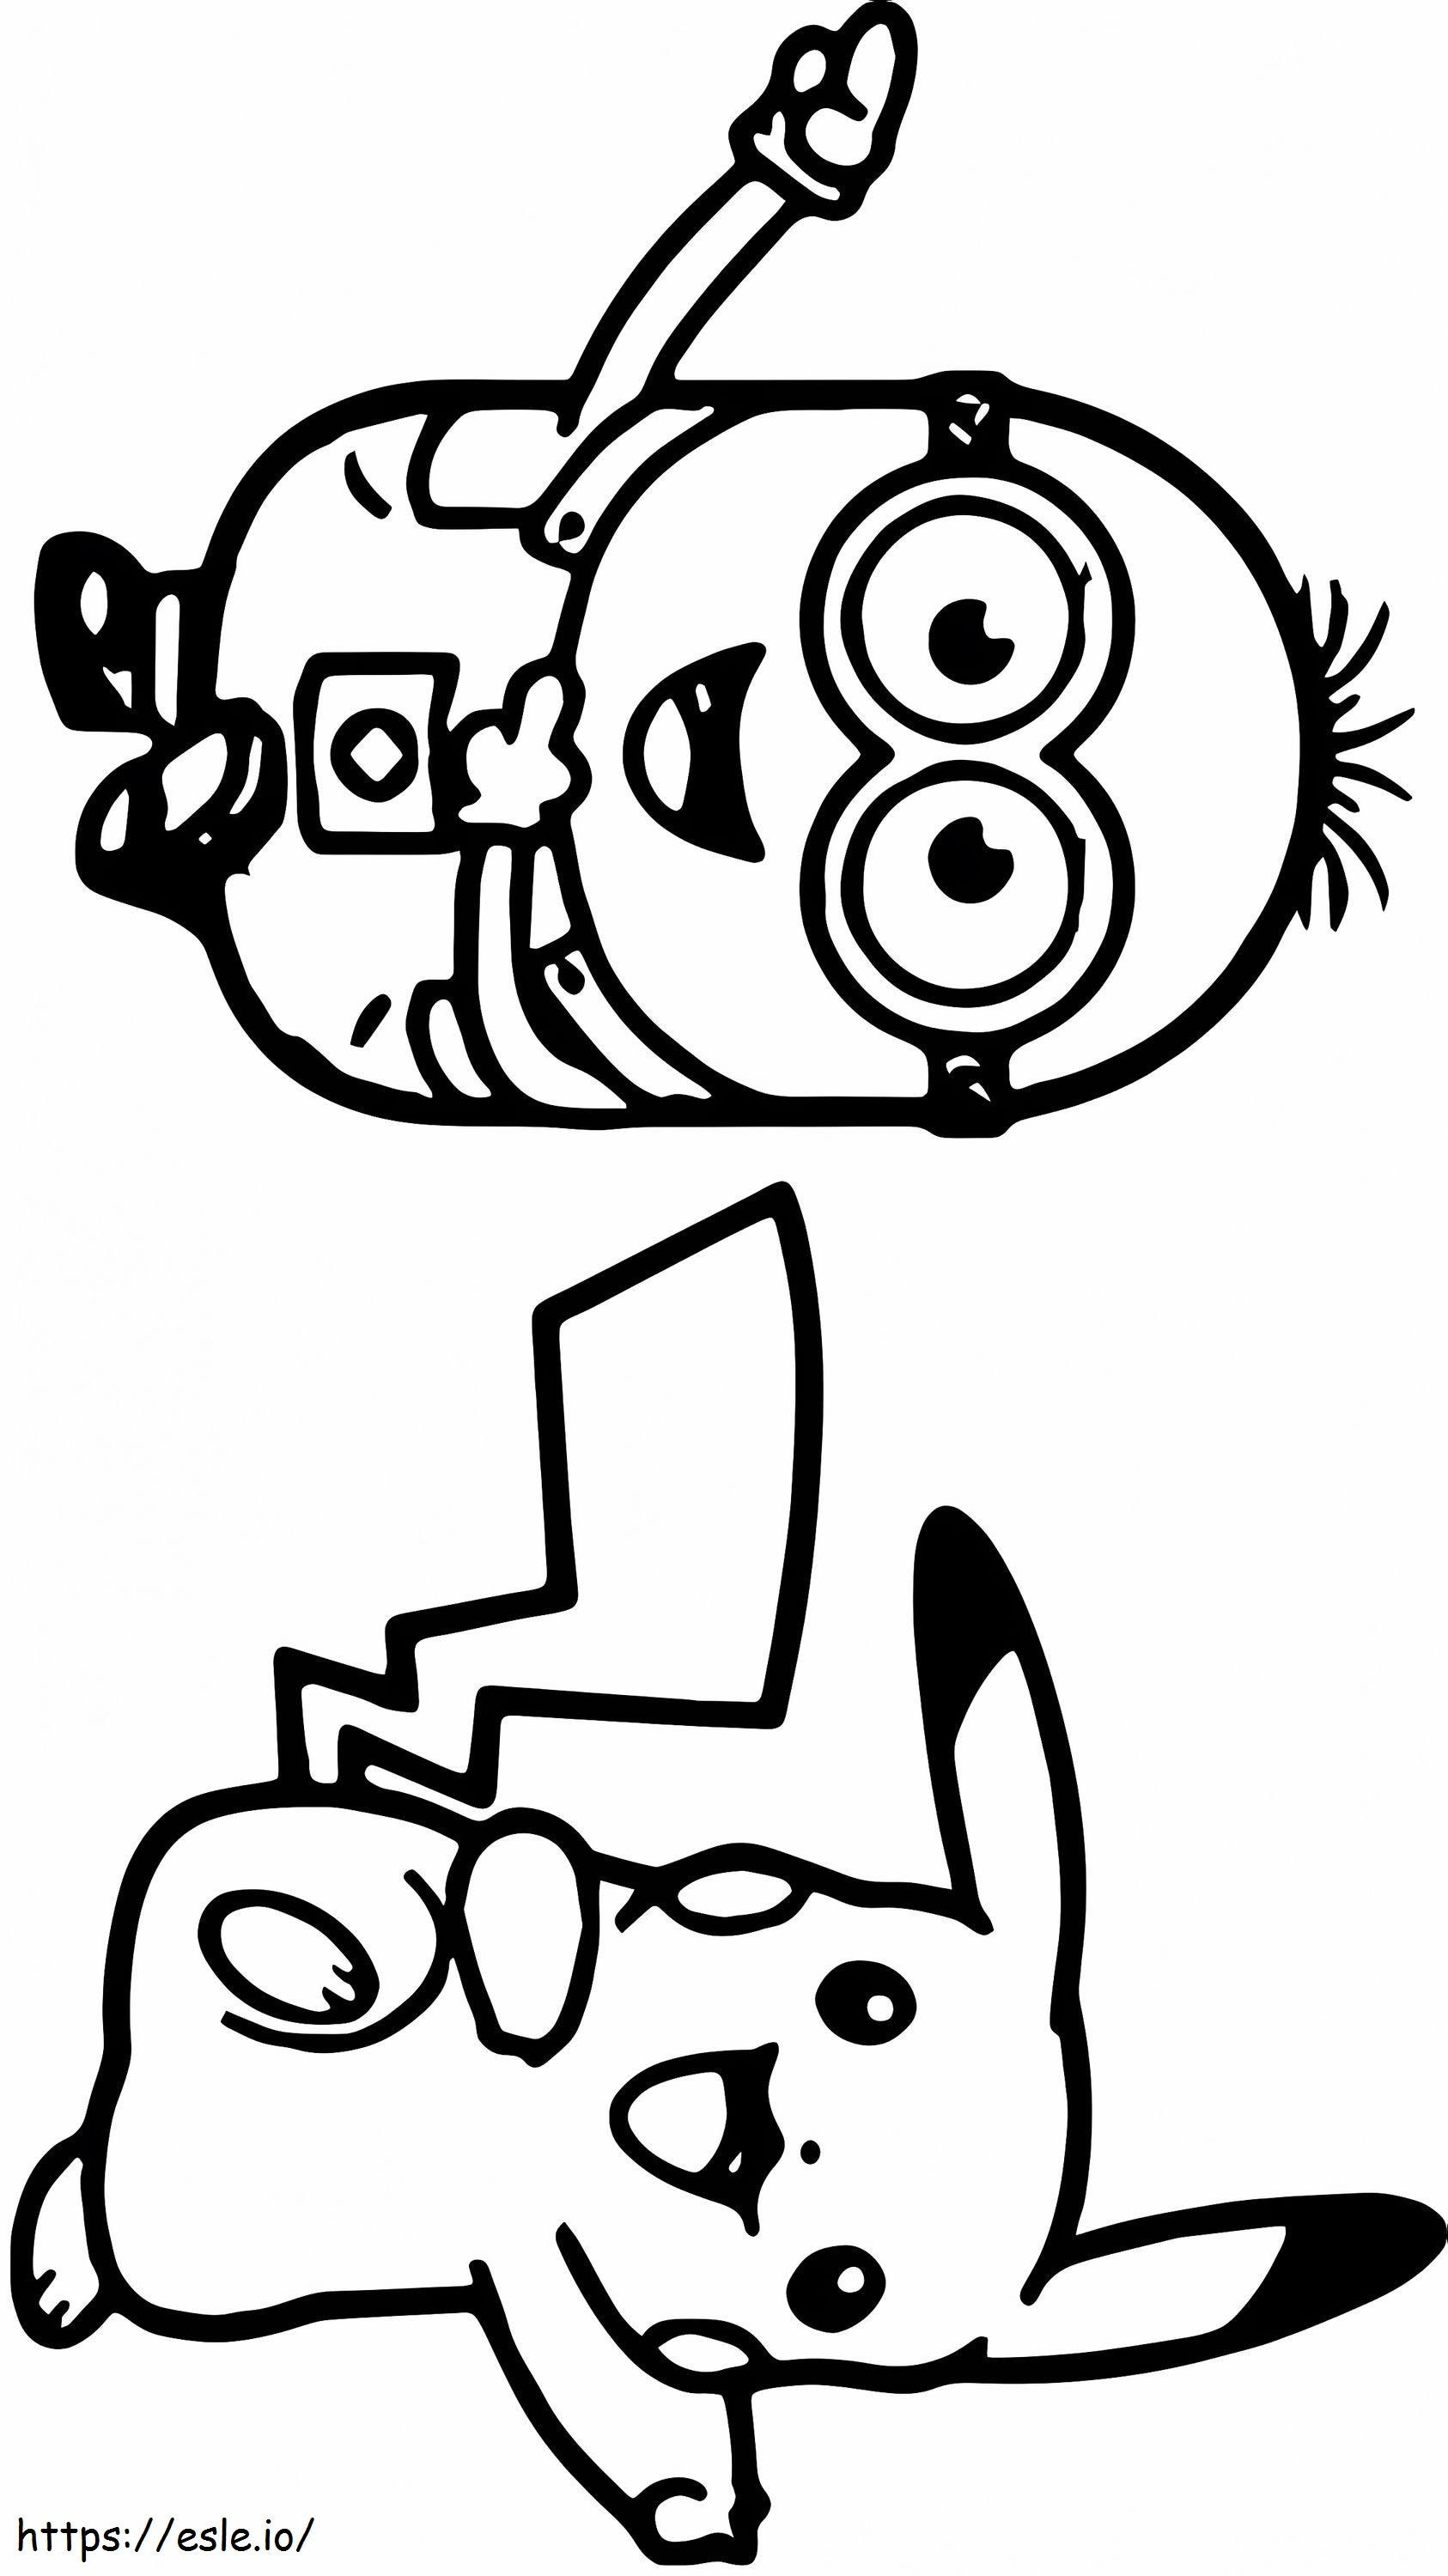 Coloriage 1532138211_Minion et Pikachu dansant A4 à imprimer dessin